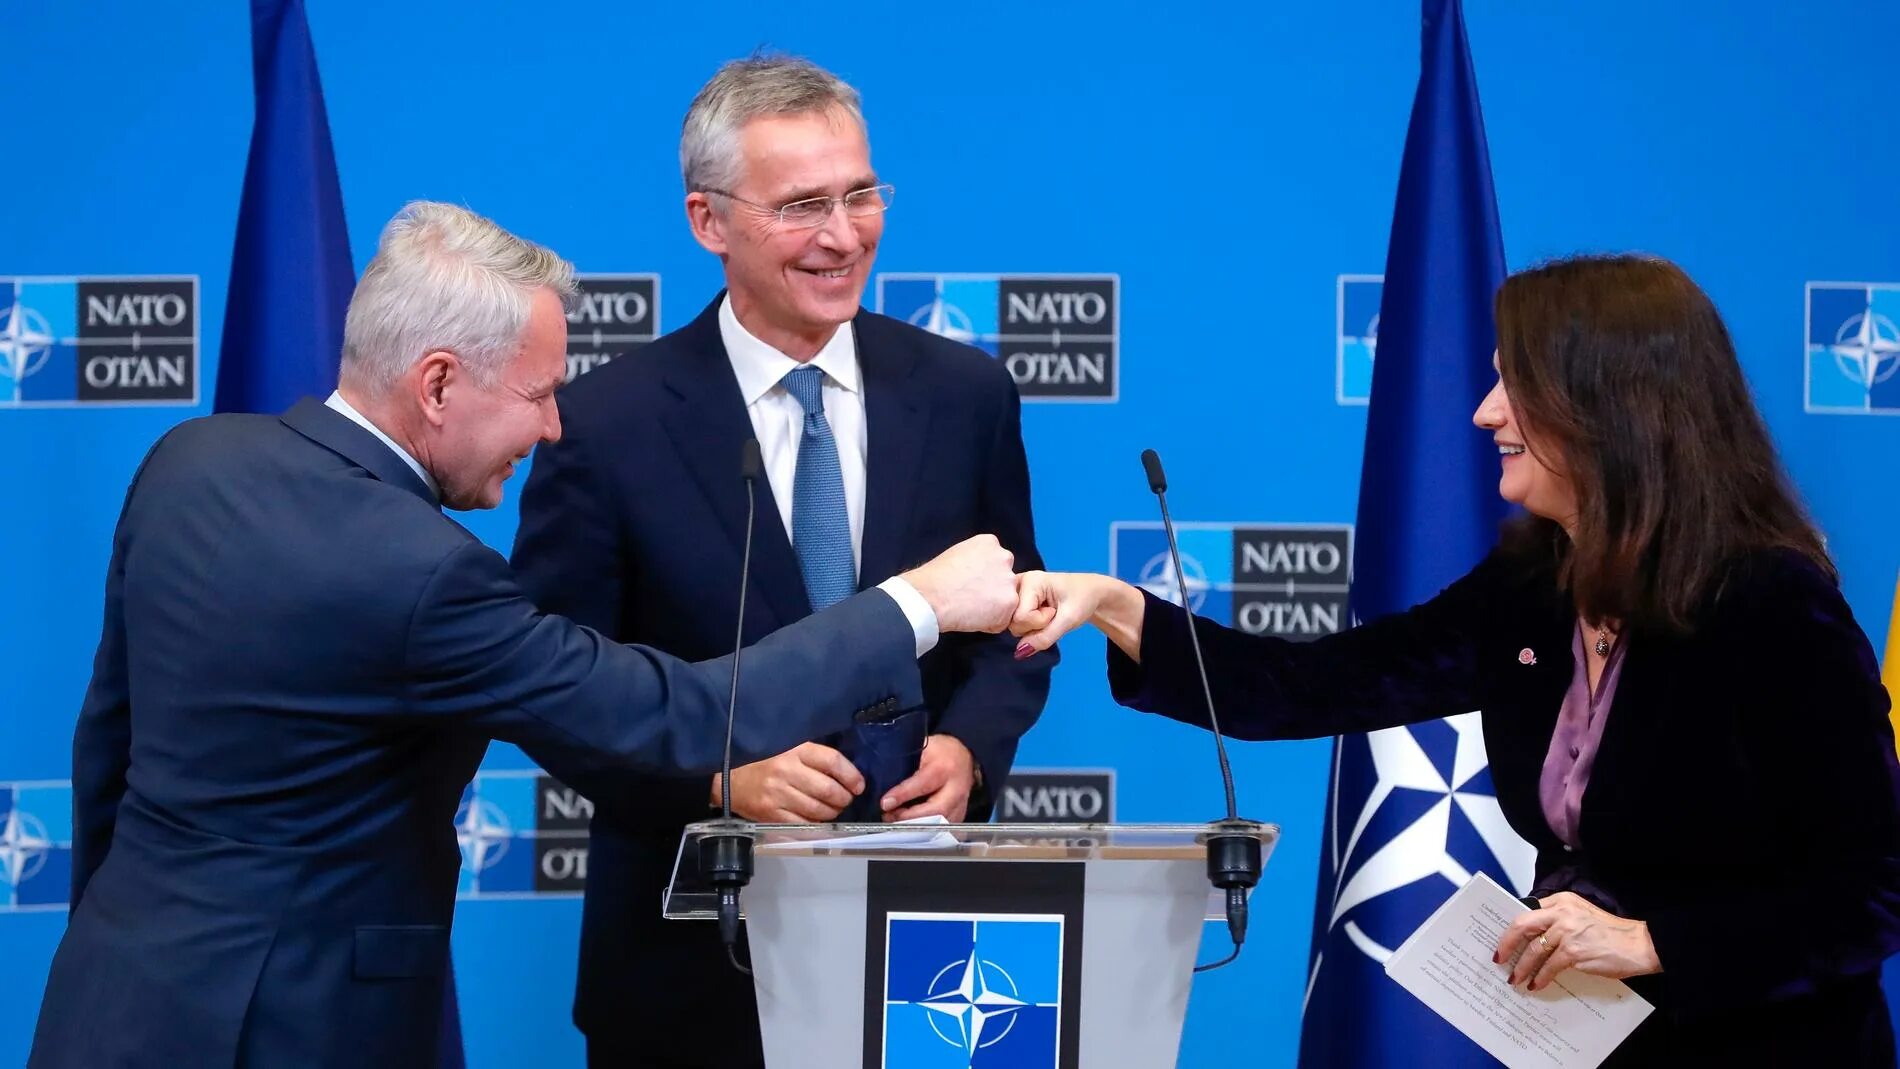 Швеция в нато официально. Финляндия и Швеция в НАТО. Вступление Швеции в НАТО. Швеция и Финляндия вступление в НАТО. Финляндия вступила в НАТО.